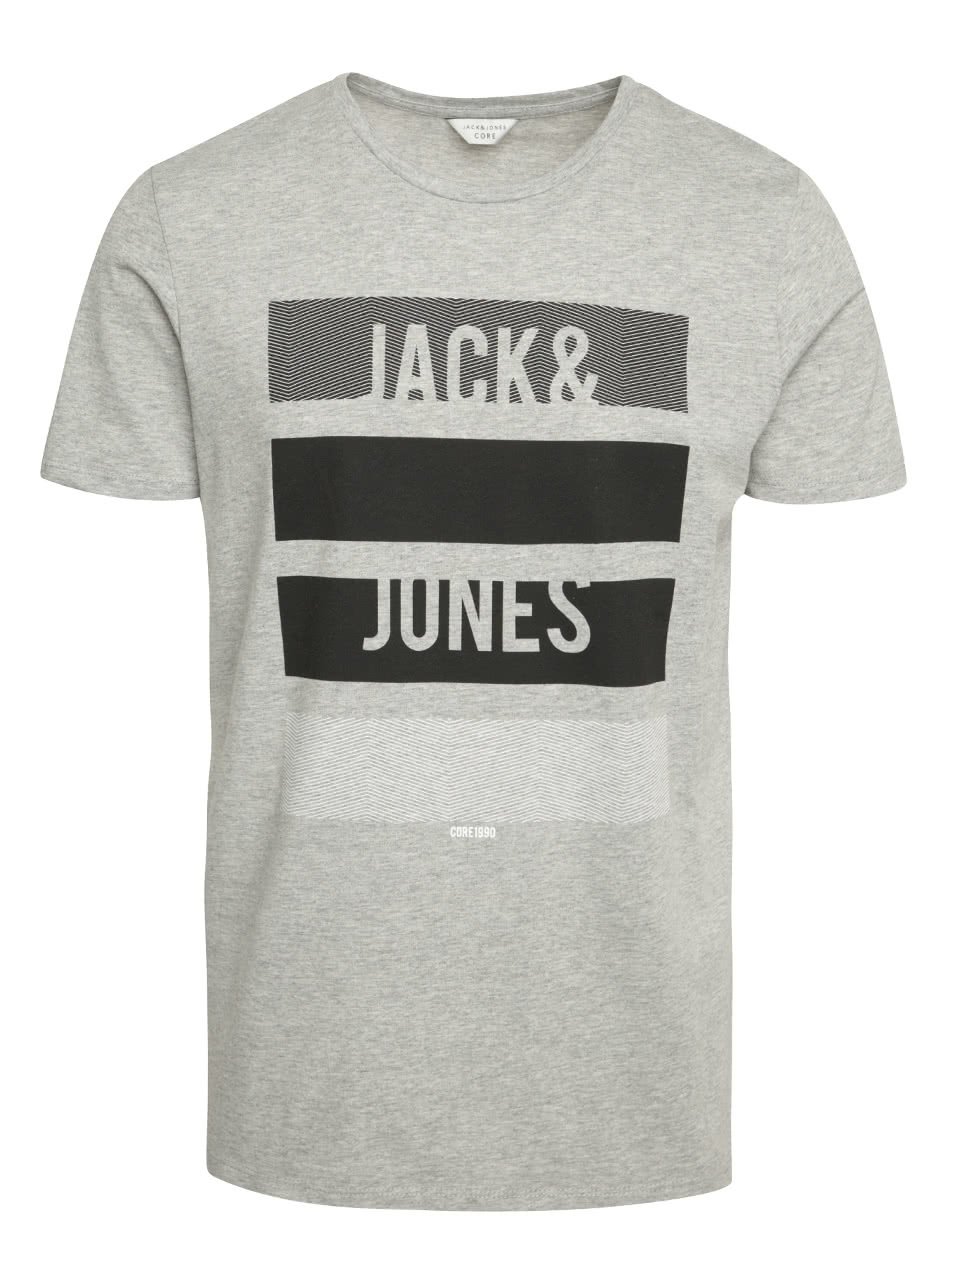 Světle šedé triko s krátkým rukávem Jack & Jones Vince